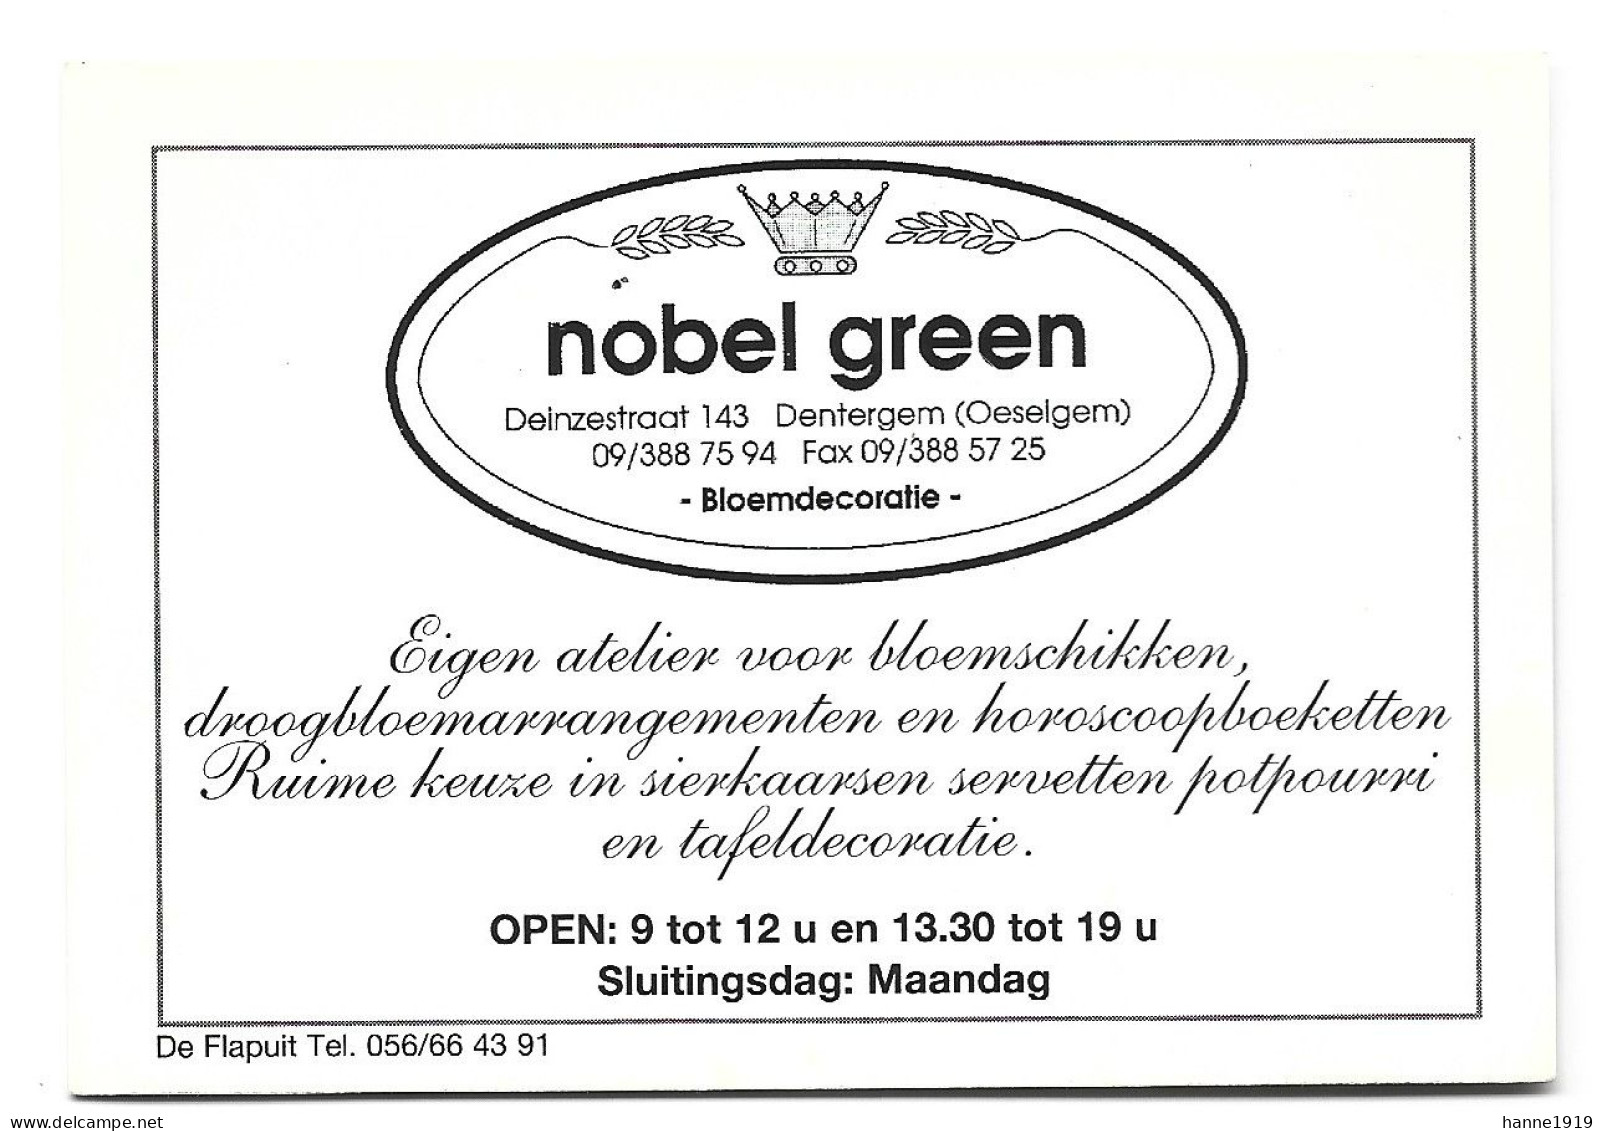 Dentergem Oeselgem Deinzestraat Atelier Nobel Green Etiquette Visitekaartje Htje - Visitenkarten